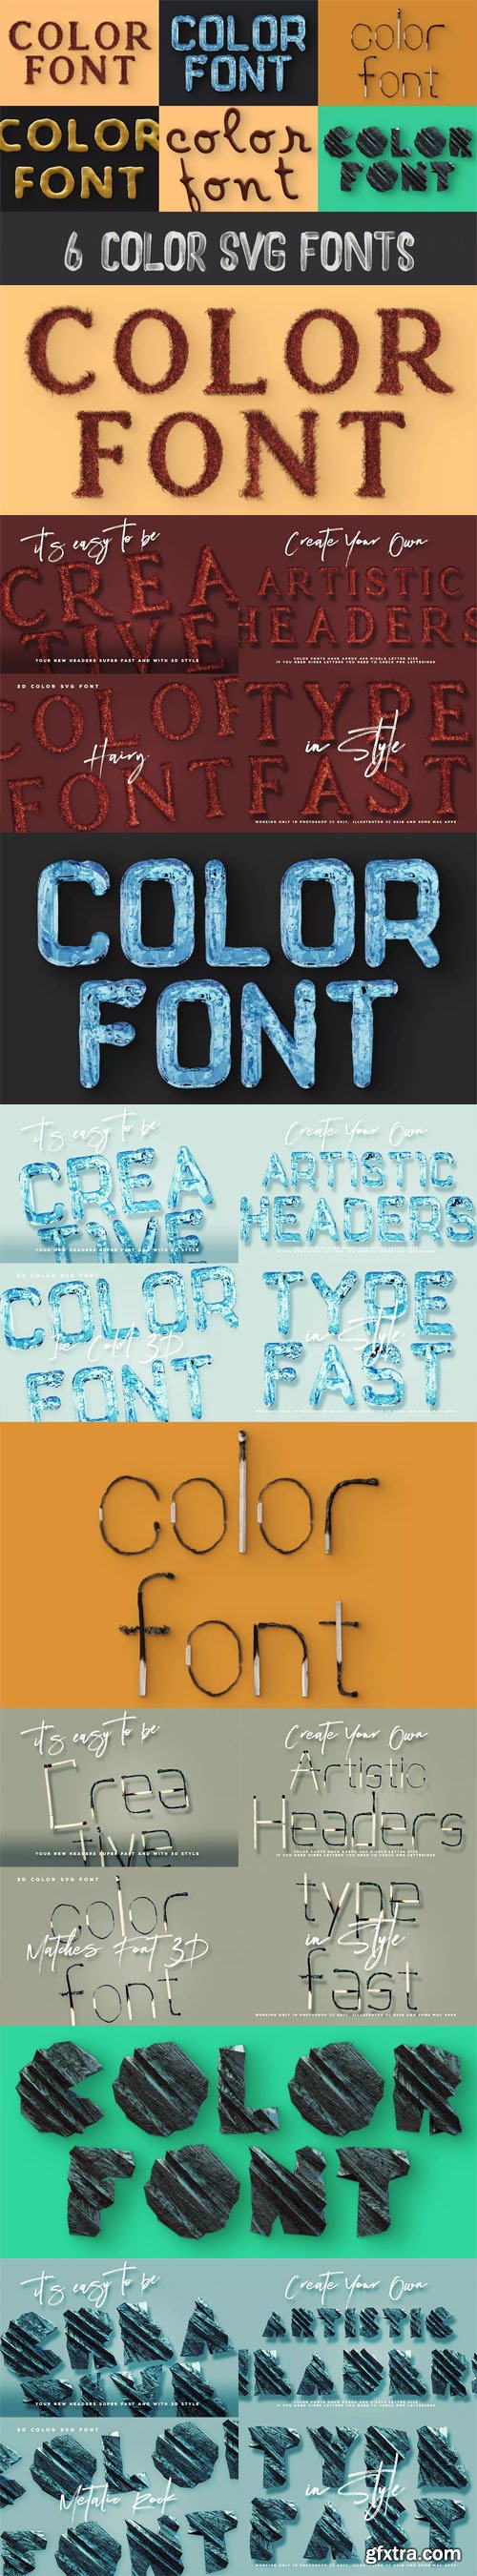 6 Color SVG Fonts